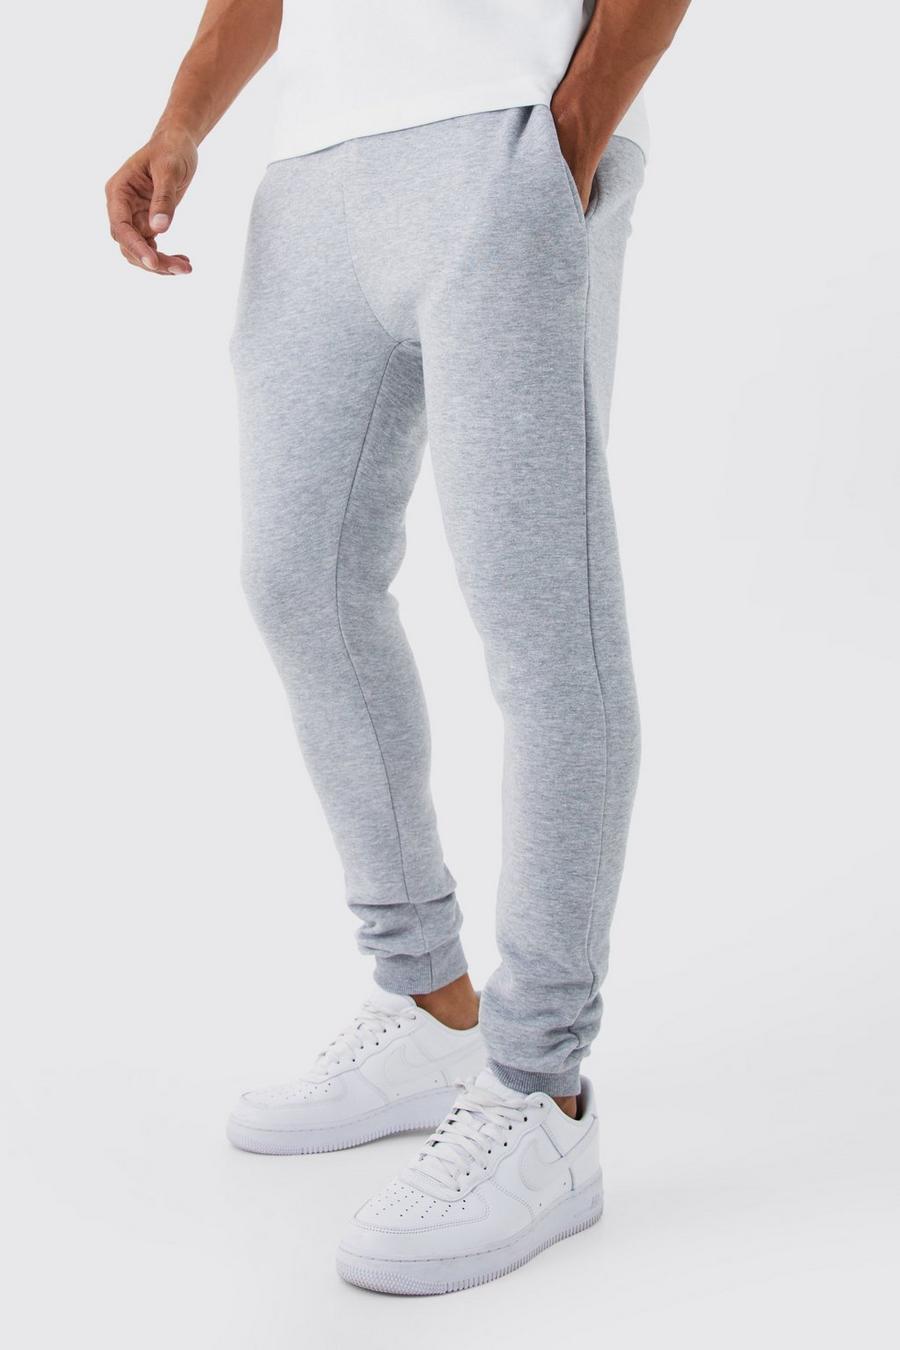 Pantaloni tuta Super Skinny Fit, Grey marl gris